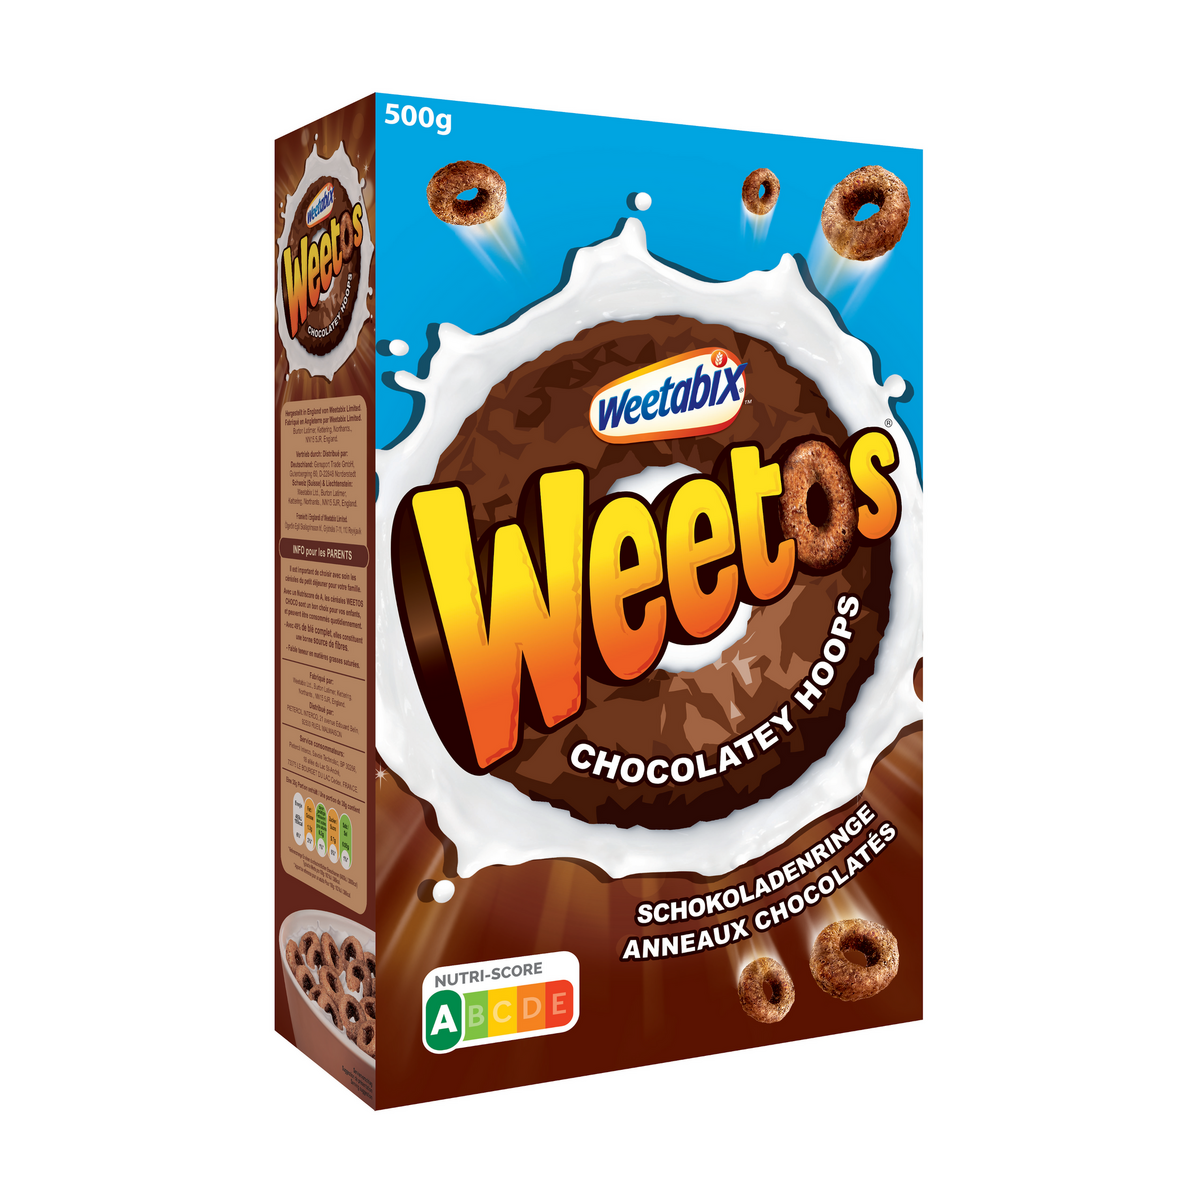 WEETABIX Céréales Weetos anneaux chocolatés 500g